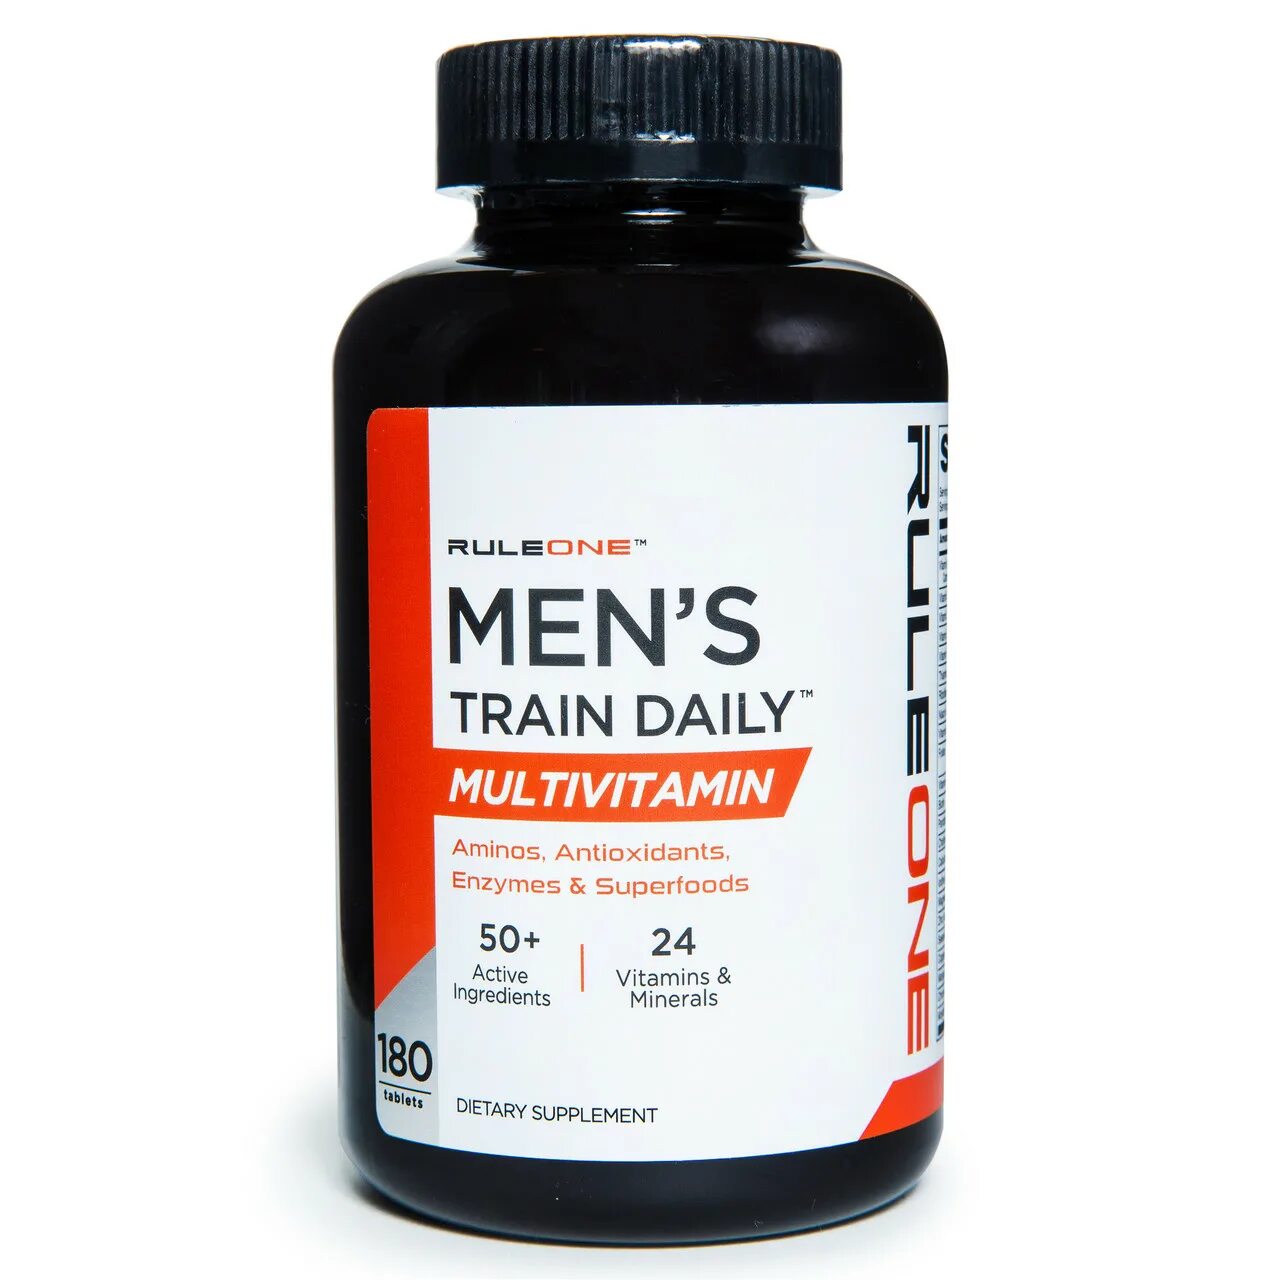 Мультивитамины витамины для мужчин. Daily мультивитамин. Витамины r1. RULEONE Mens Train Daily Multivitamin.